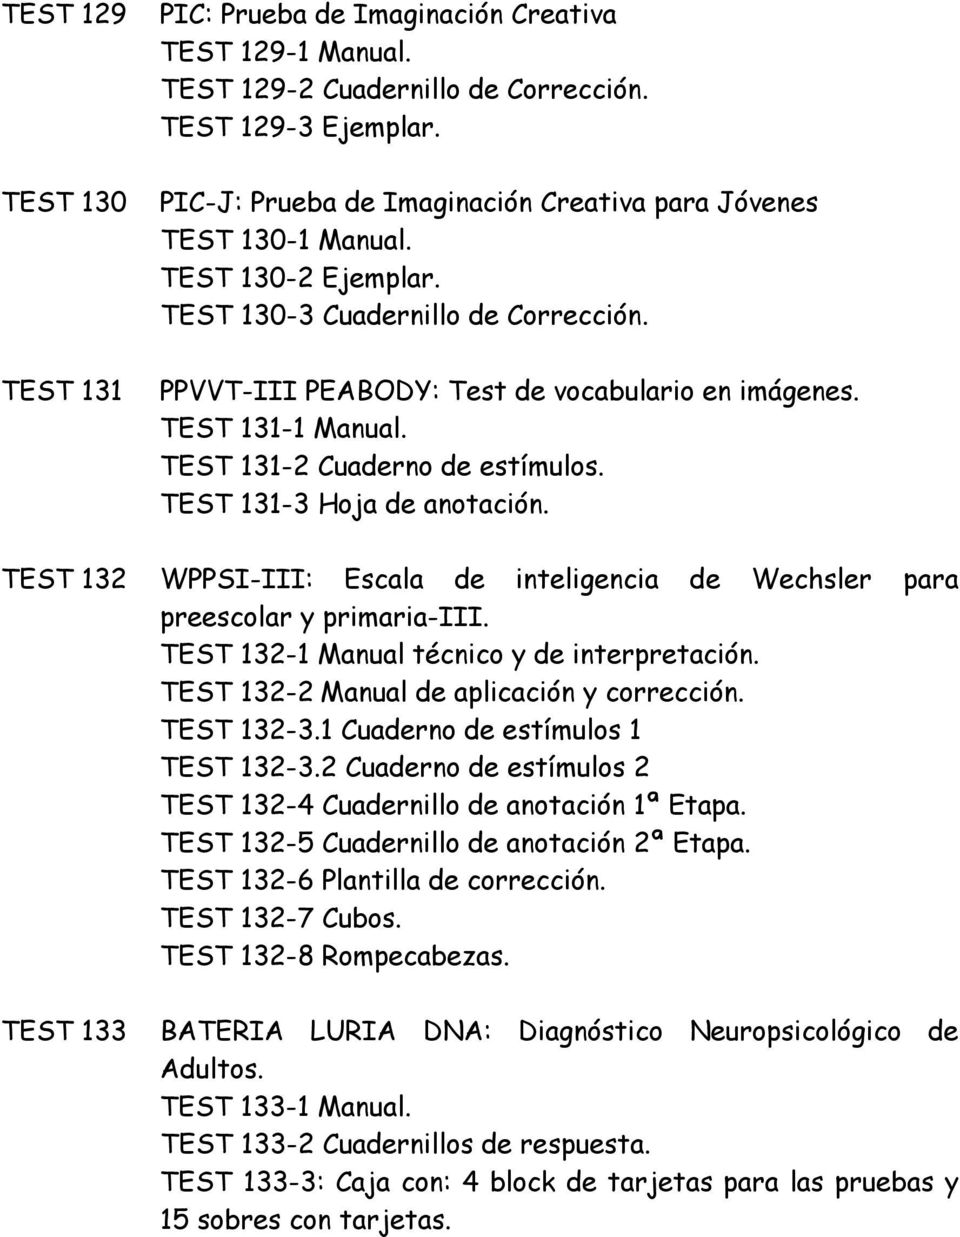 TEST 131-2 Cuaderno de estímulos. TEST 131-3 Hoja de anotación. TEST 132 WPPSI-III: Escala de inteligencia de Wechsler para preescolar y primaria-iii. TEST 132-1 Manual técnico y de interpretación.